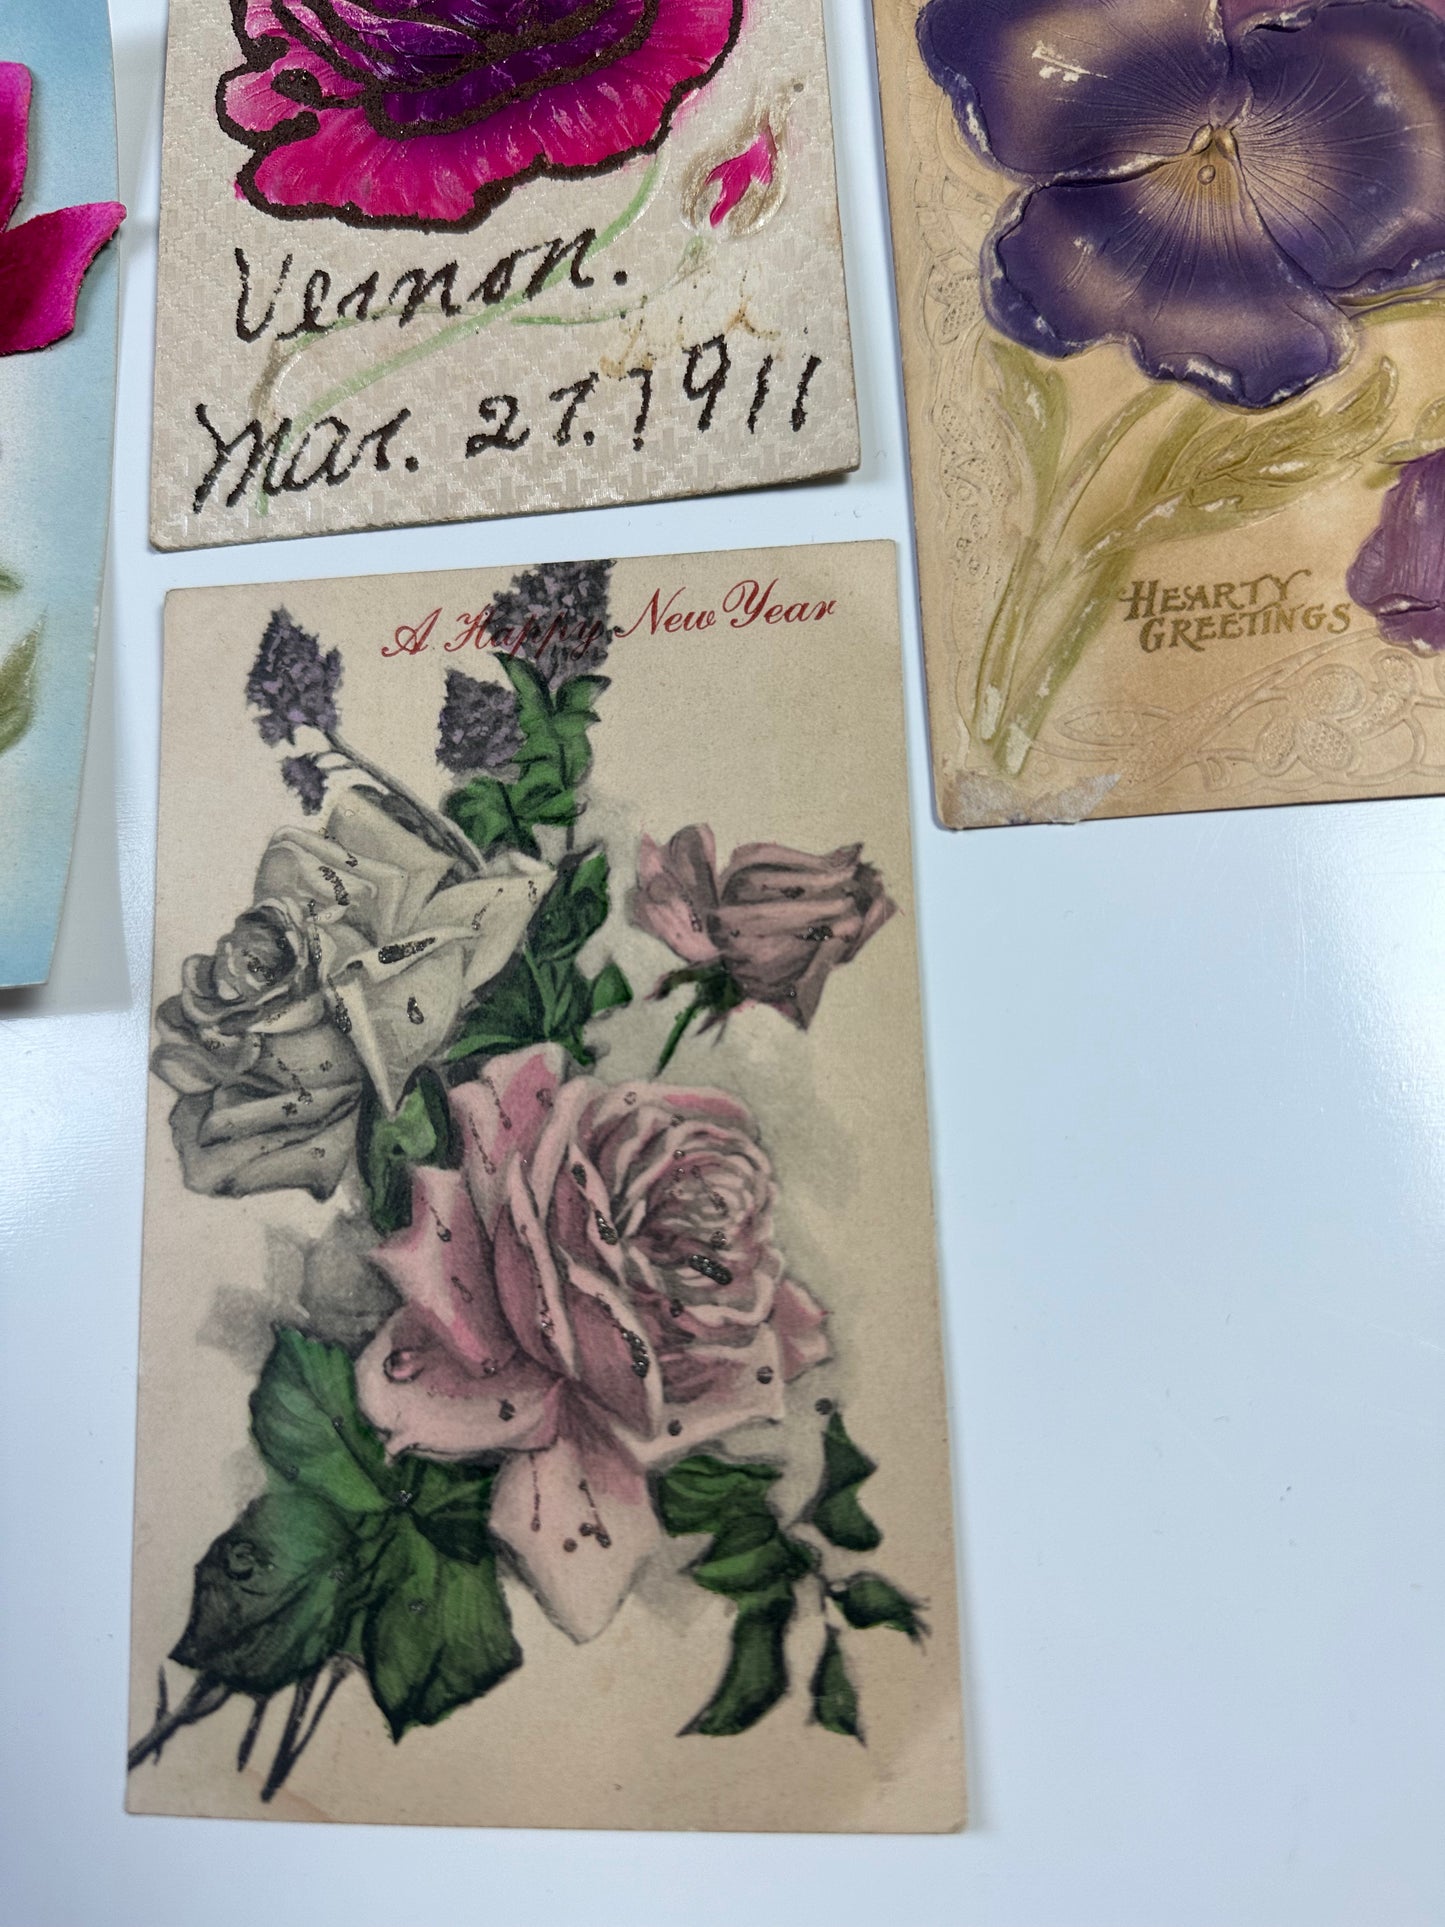 Antique floral postcards - flowers